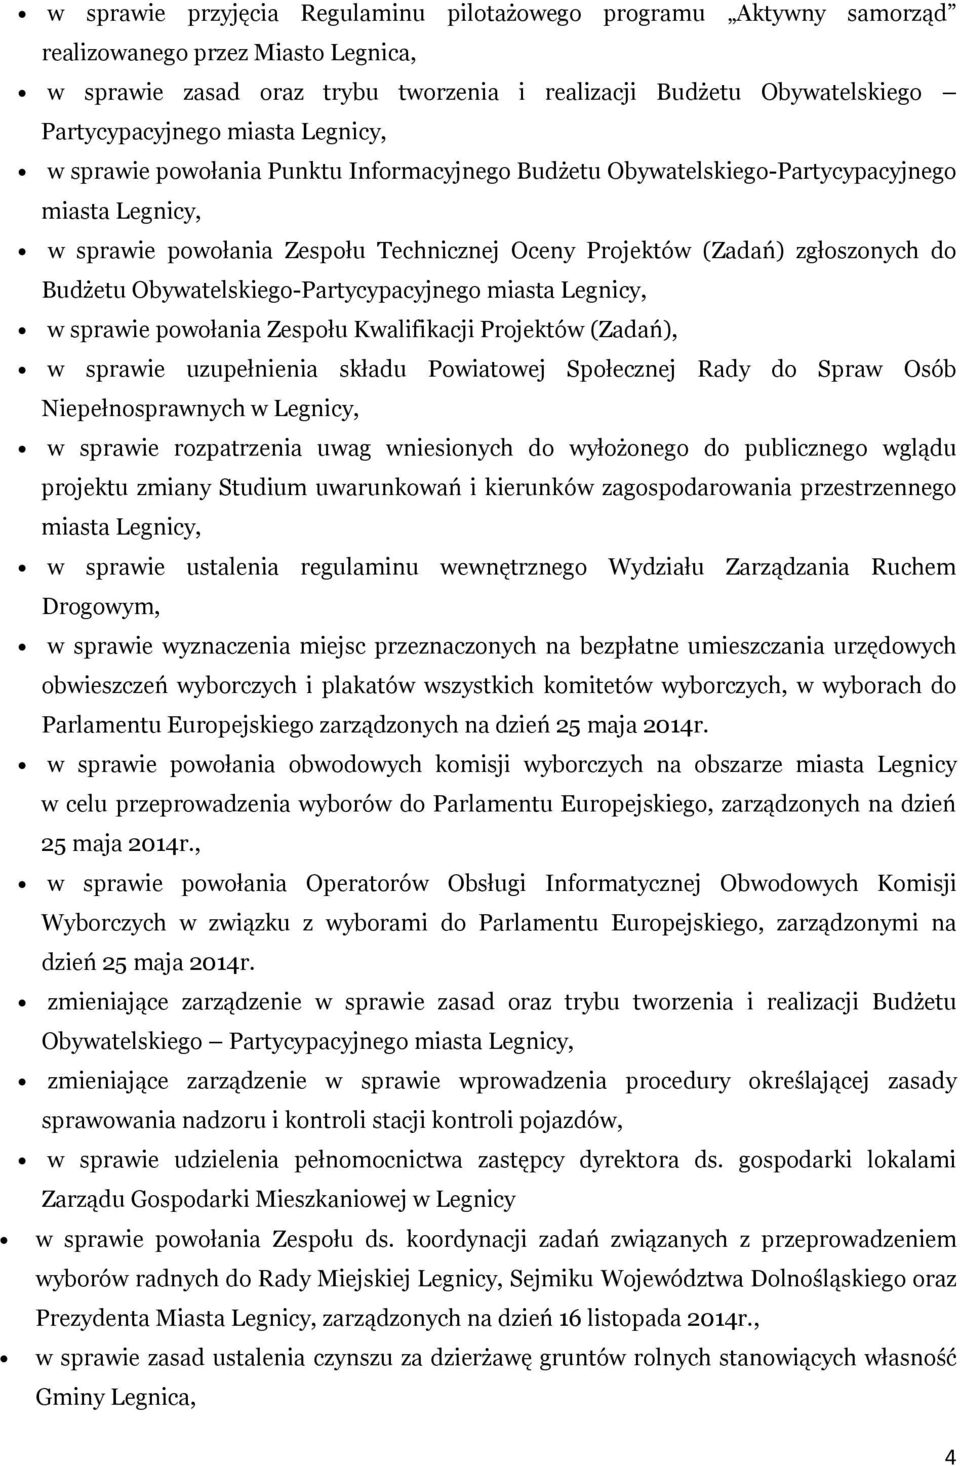 Budżetu Obywatelskiego-Partycypacyjnego miasta Legnicy, w sprawie powołania Zespołu Kwalifikacji Projektów (Zadań), w sprawie uzupełnienia składu Powiatowej Społecznej Rady do Spraw Osób